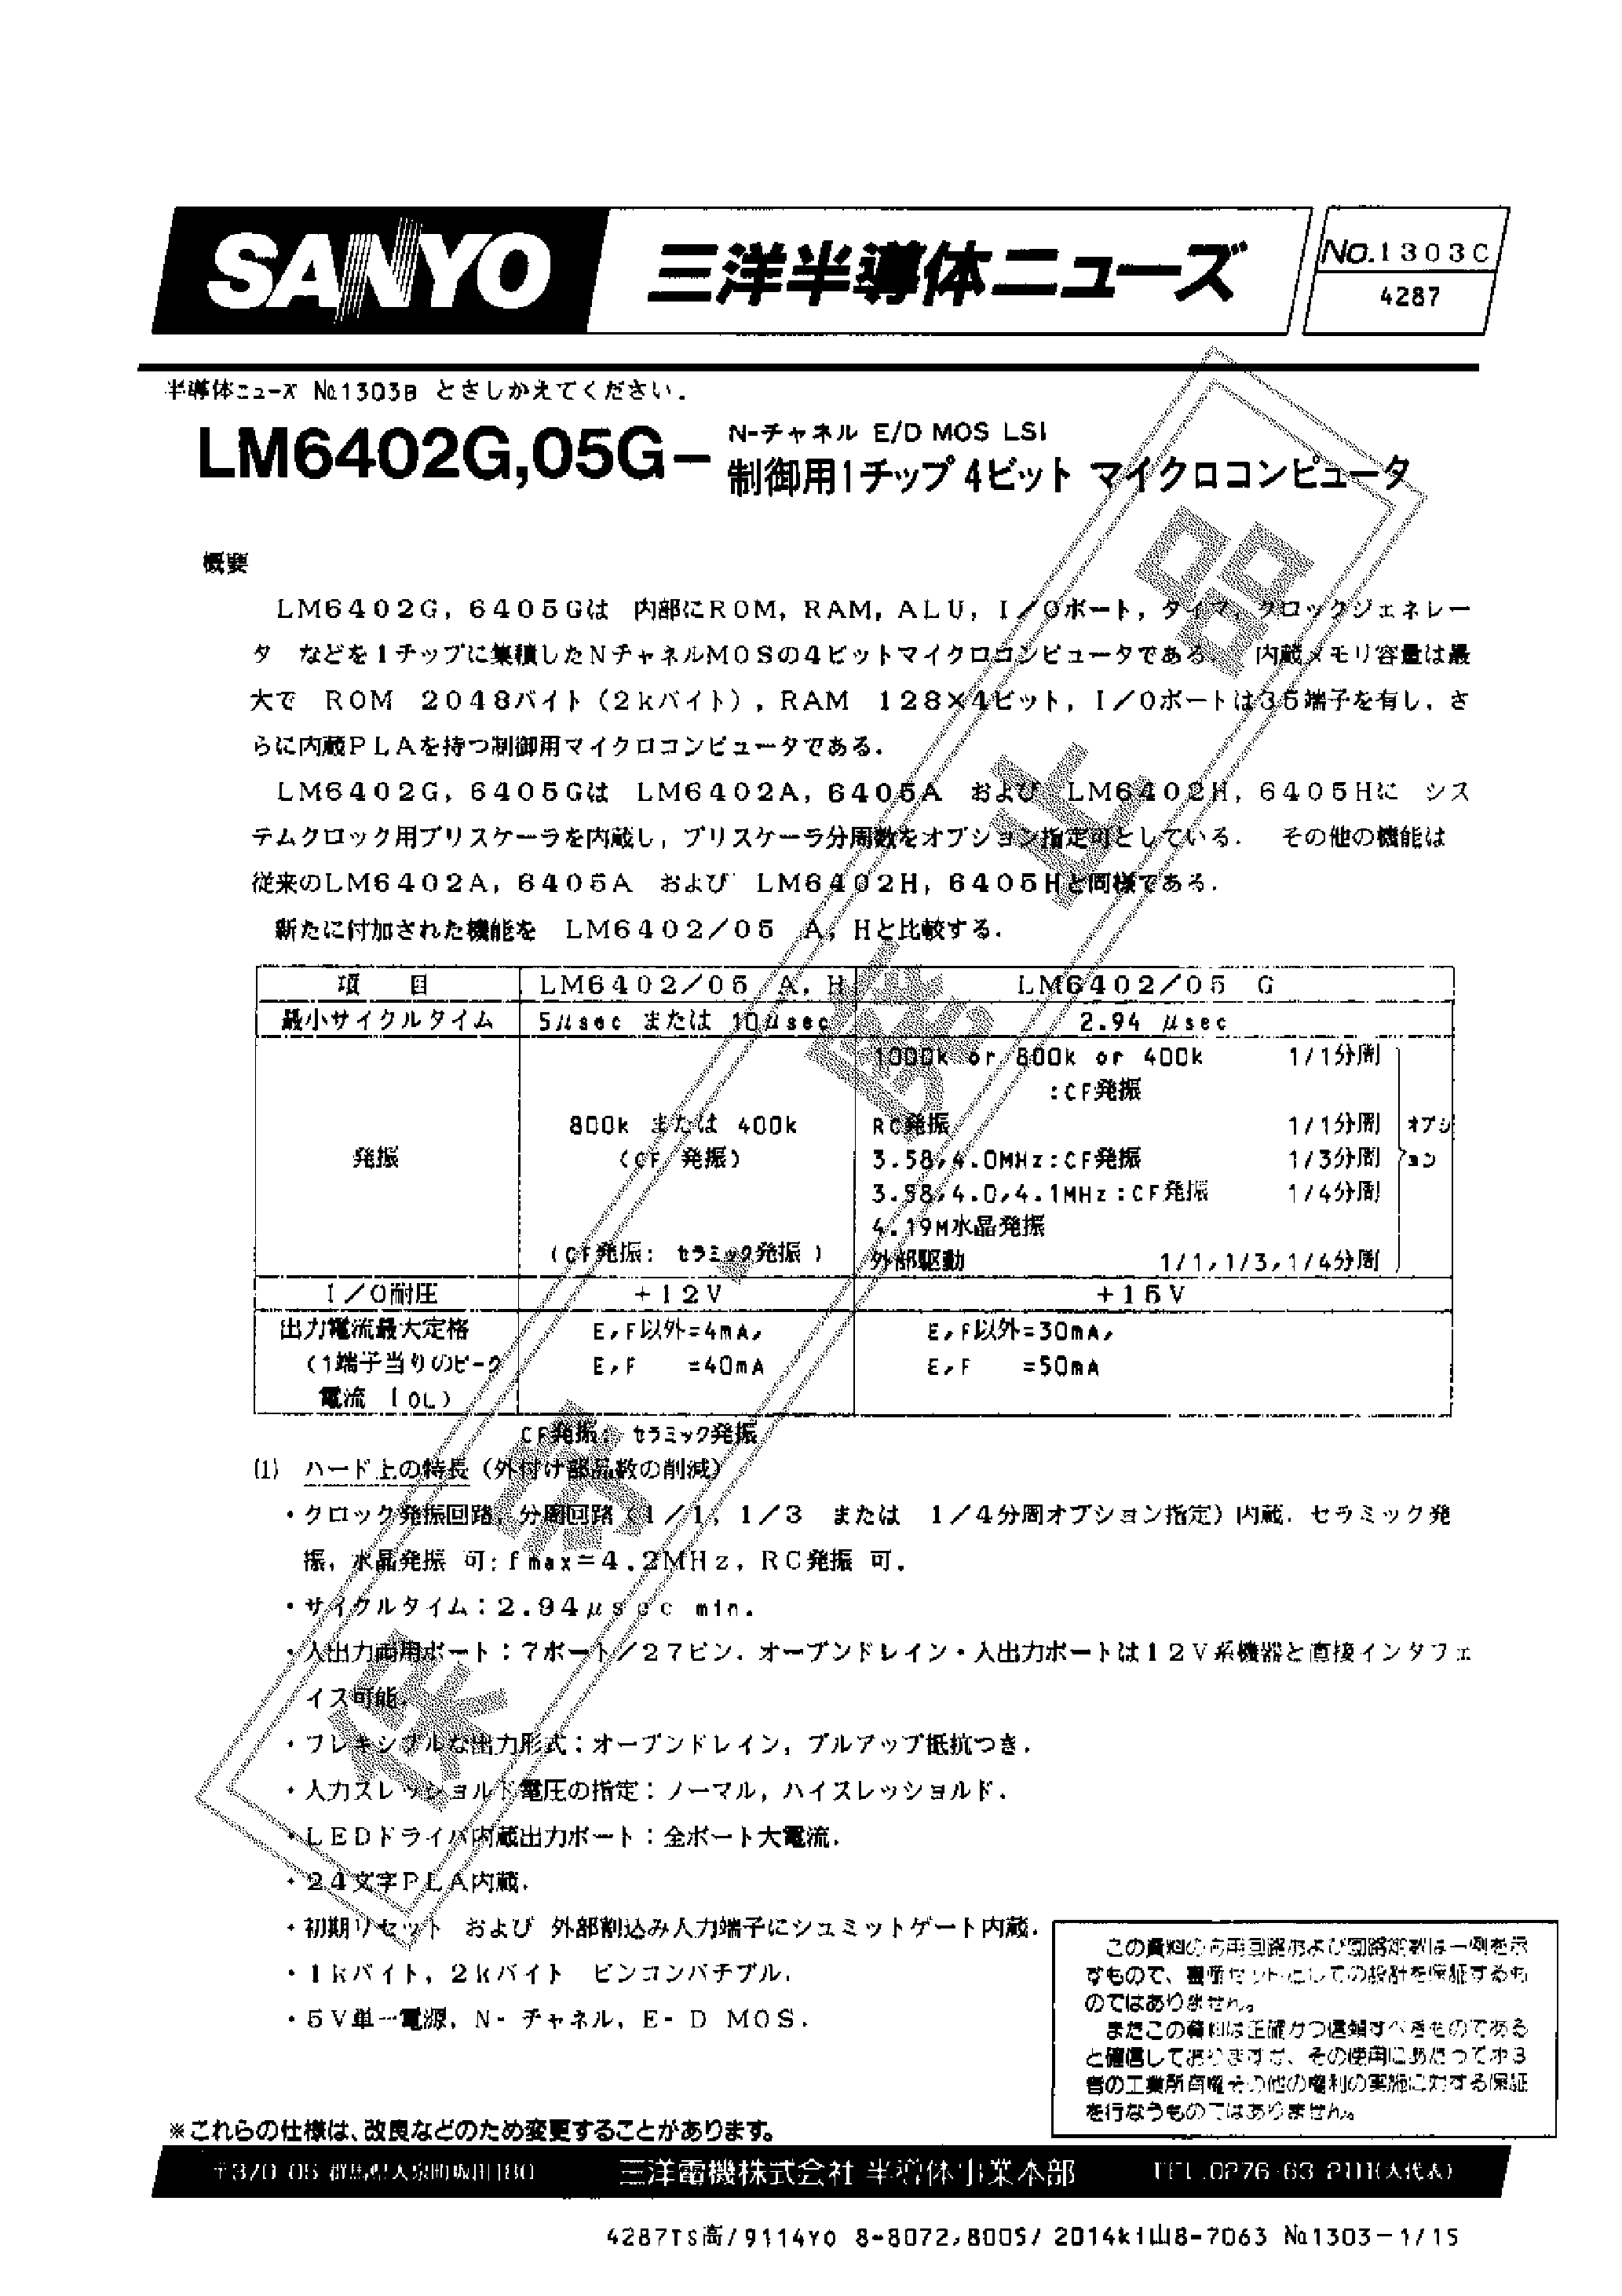 Даташит LM6402G - (LM6402G/05G) N CHANNEL E/D MOS LSI 4 BIT MICROCOMPUTER страница 1